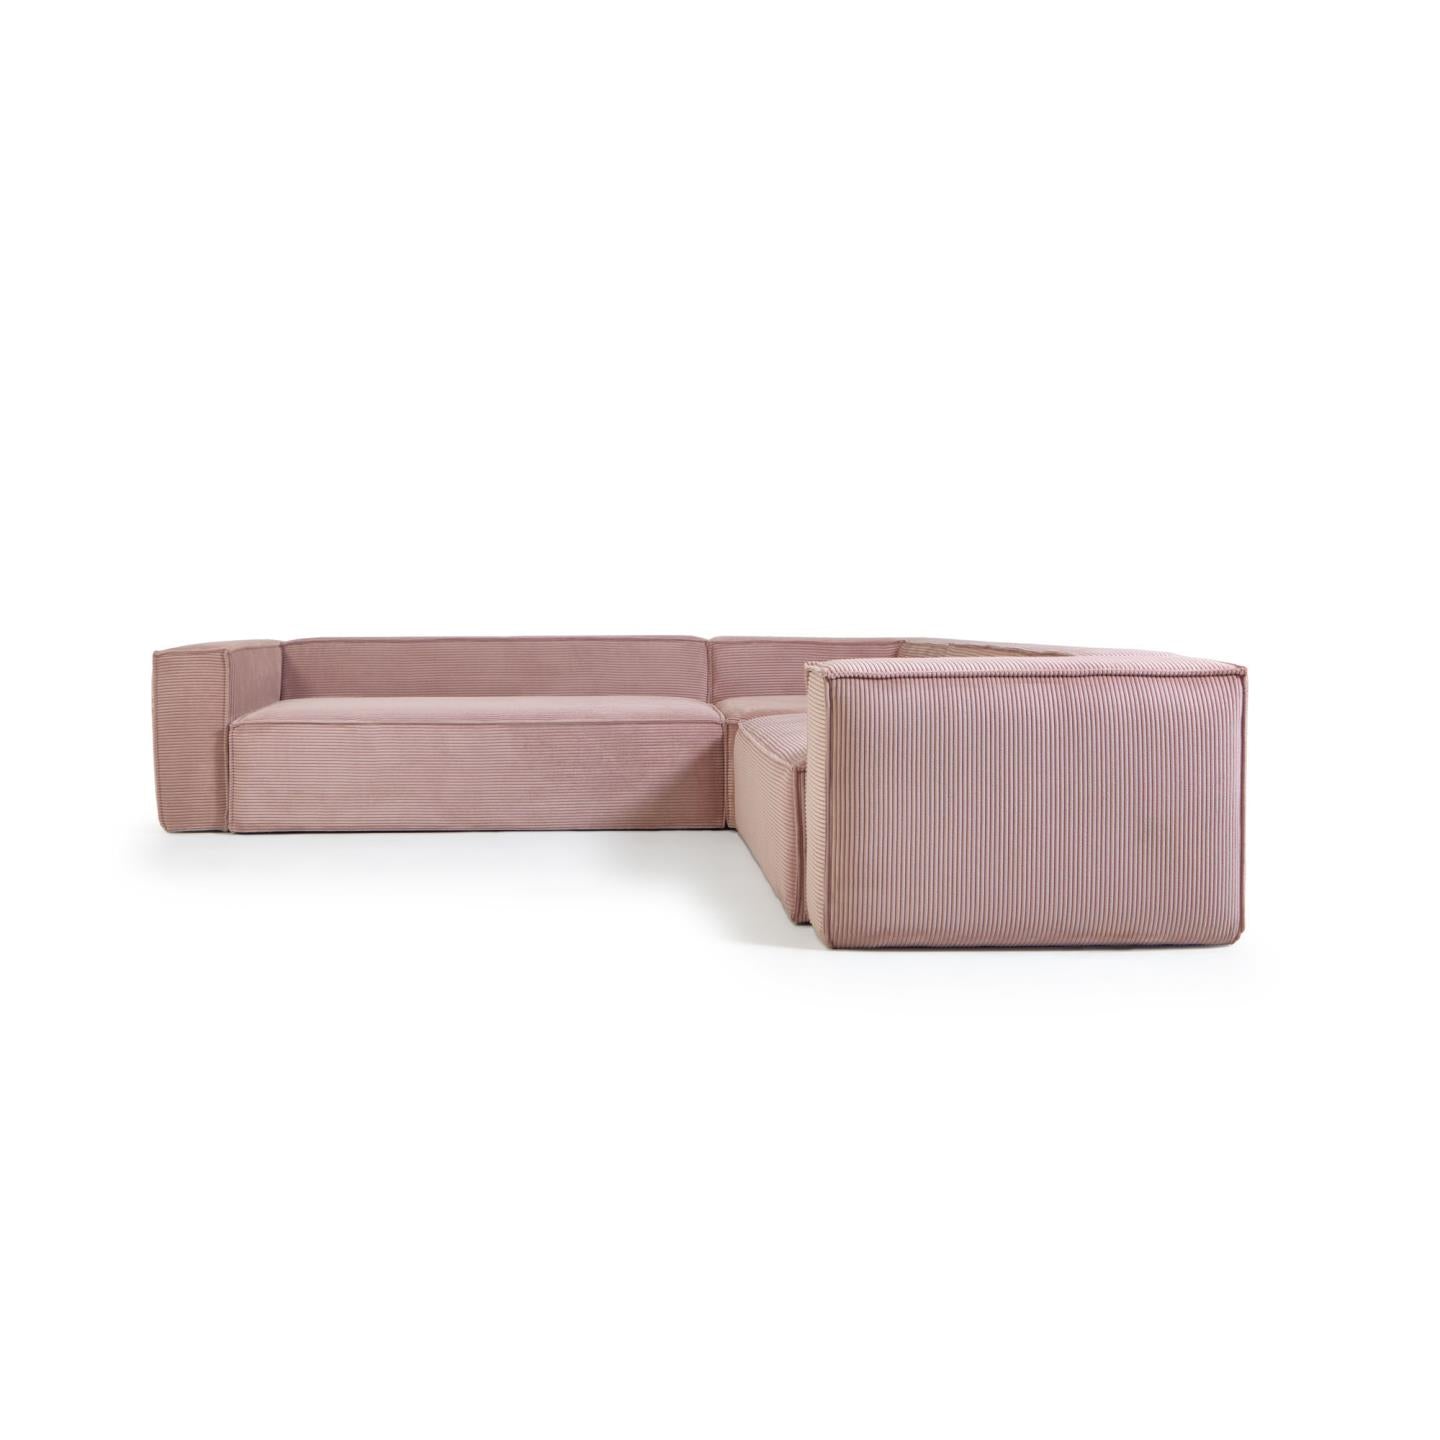 Blok 5 személyes sarokkanapé rózsaszín, széles varrású kordbársonyból, 320 x 290 / 290 x 320 cm